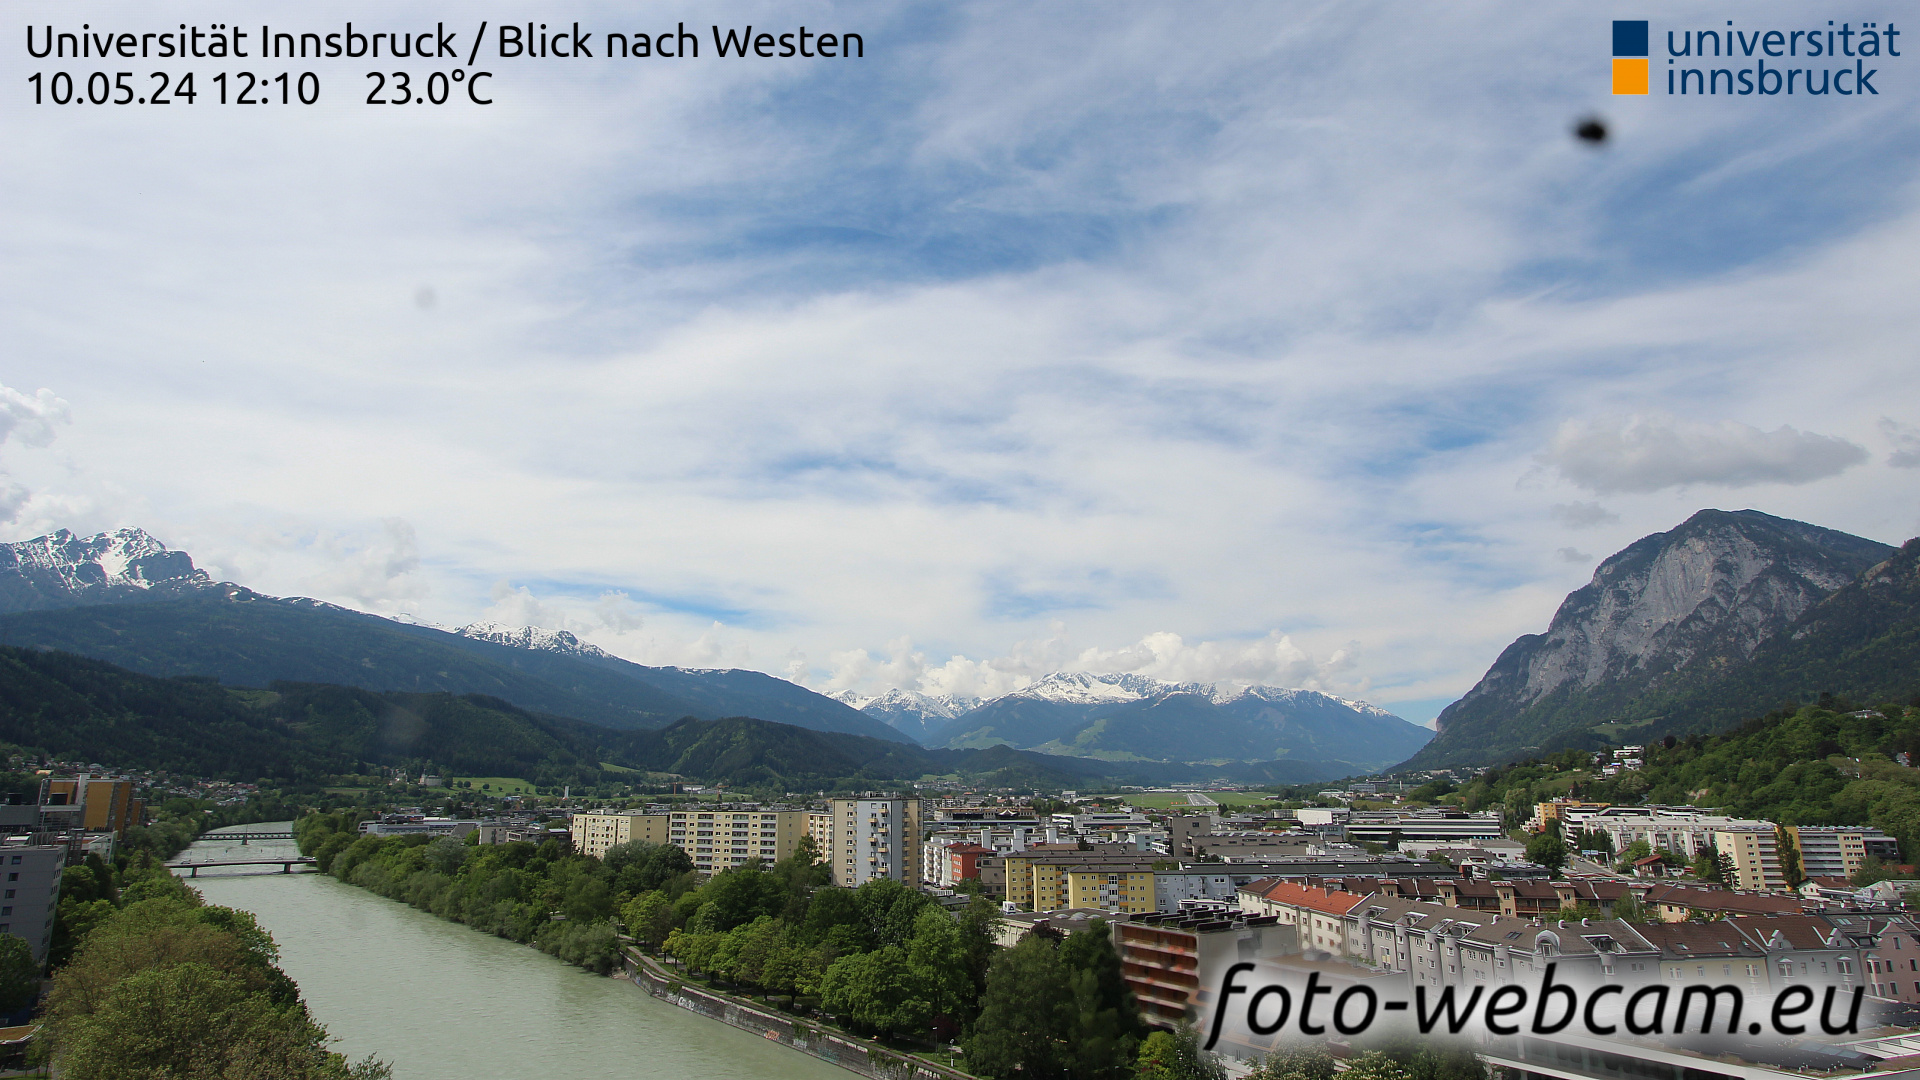 Innsbruck Di. 12:17